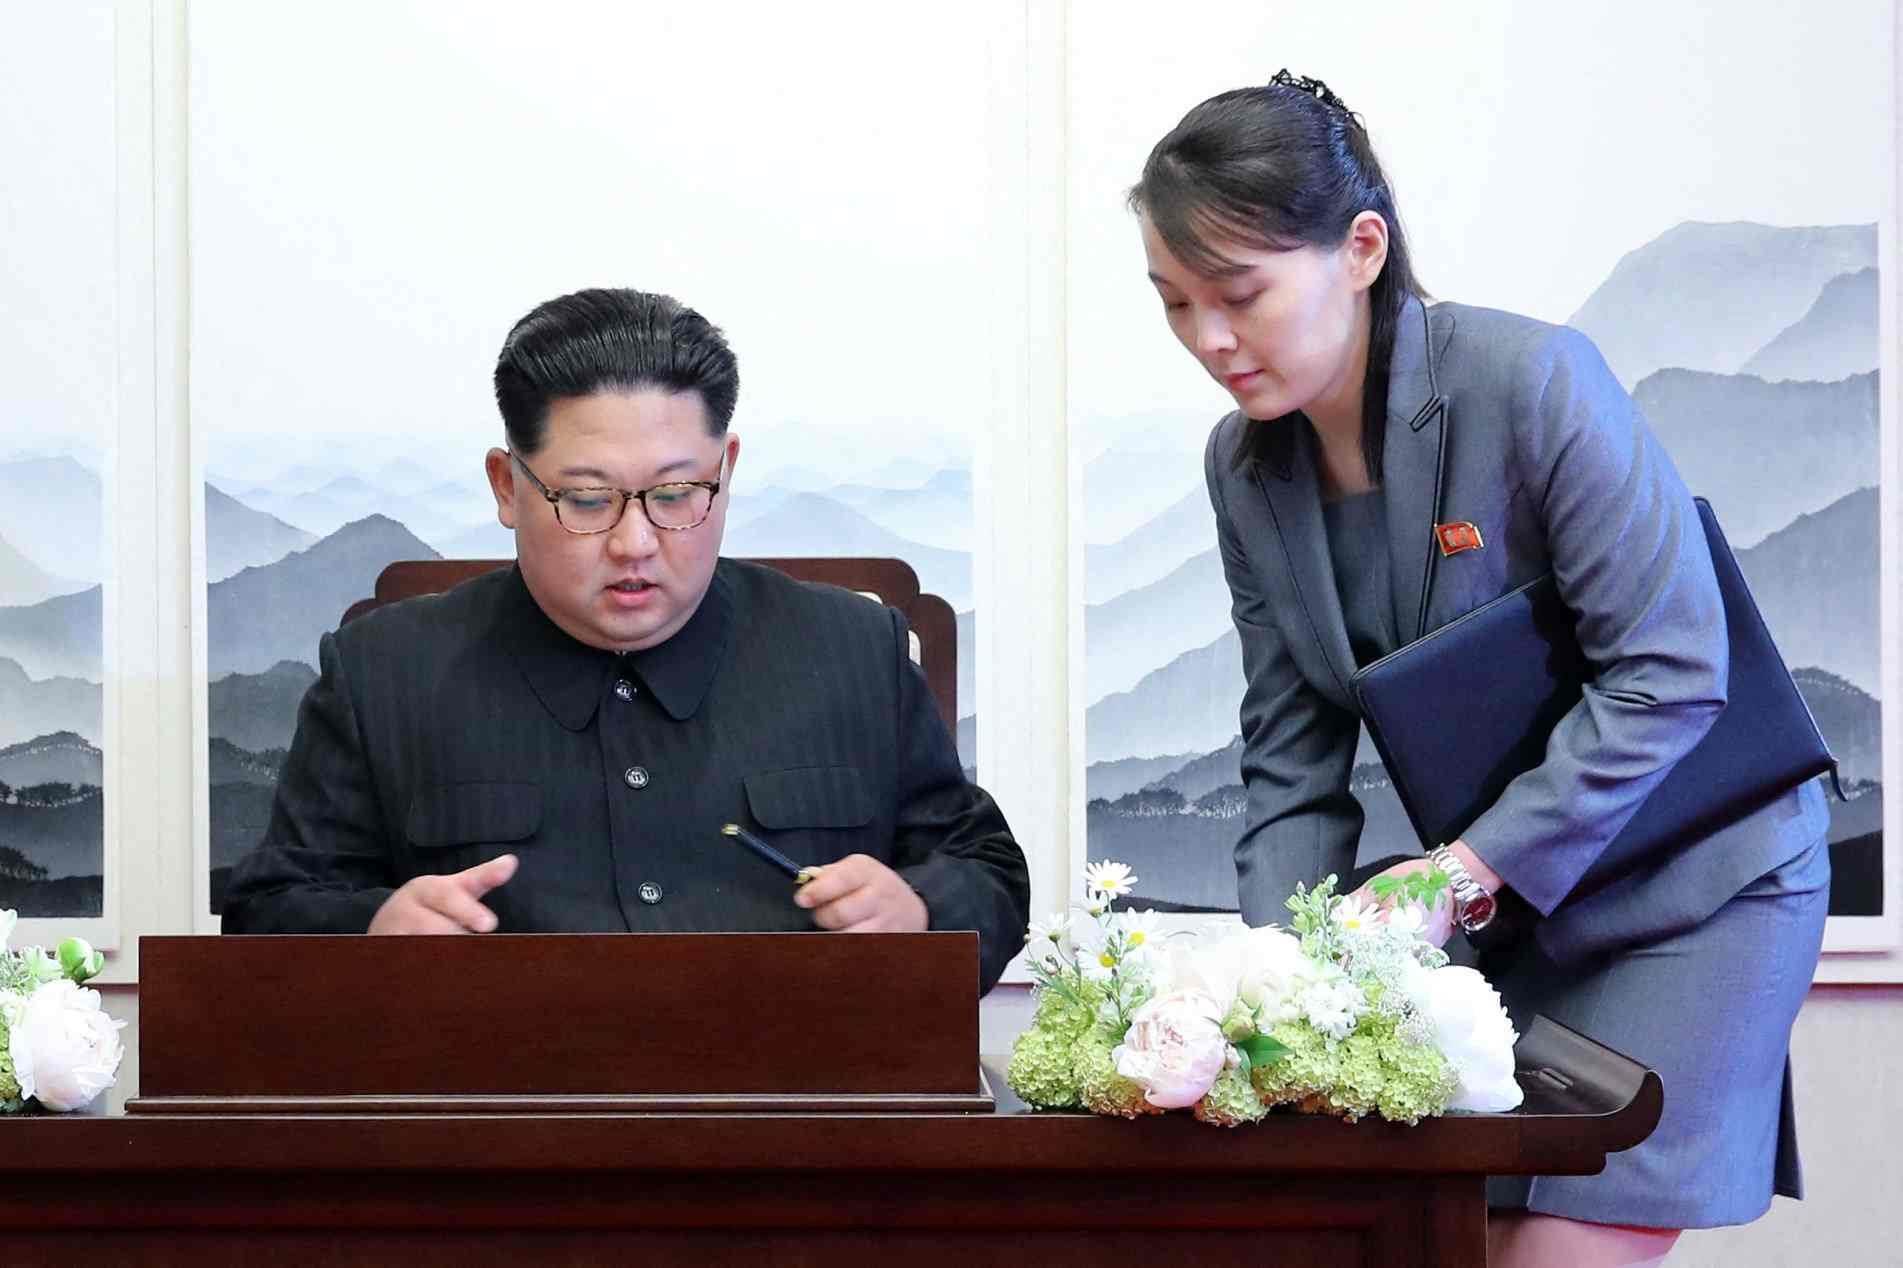 Líder norte-coreano, Kim Jong Un